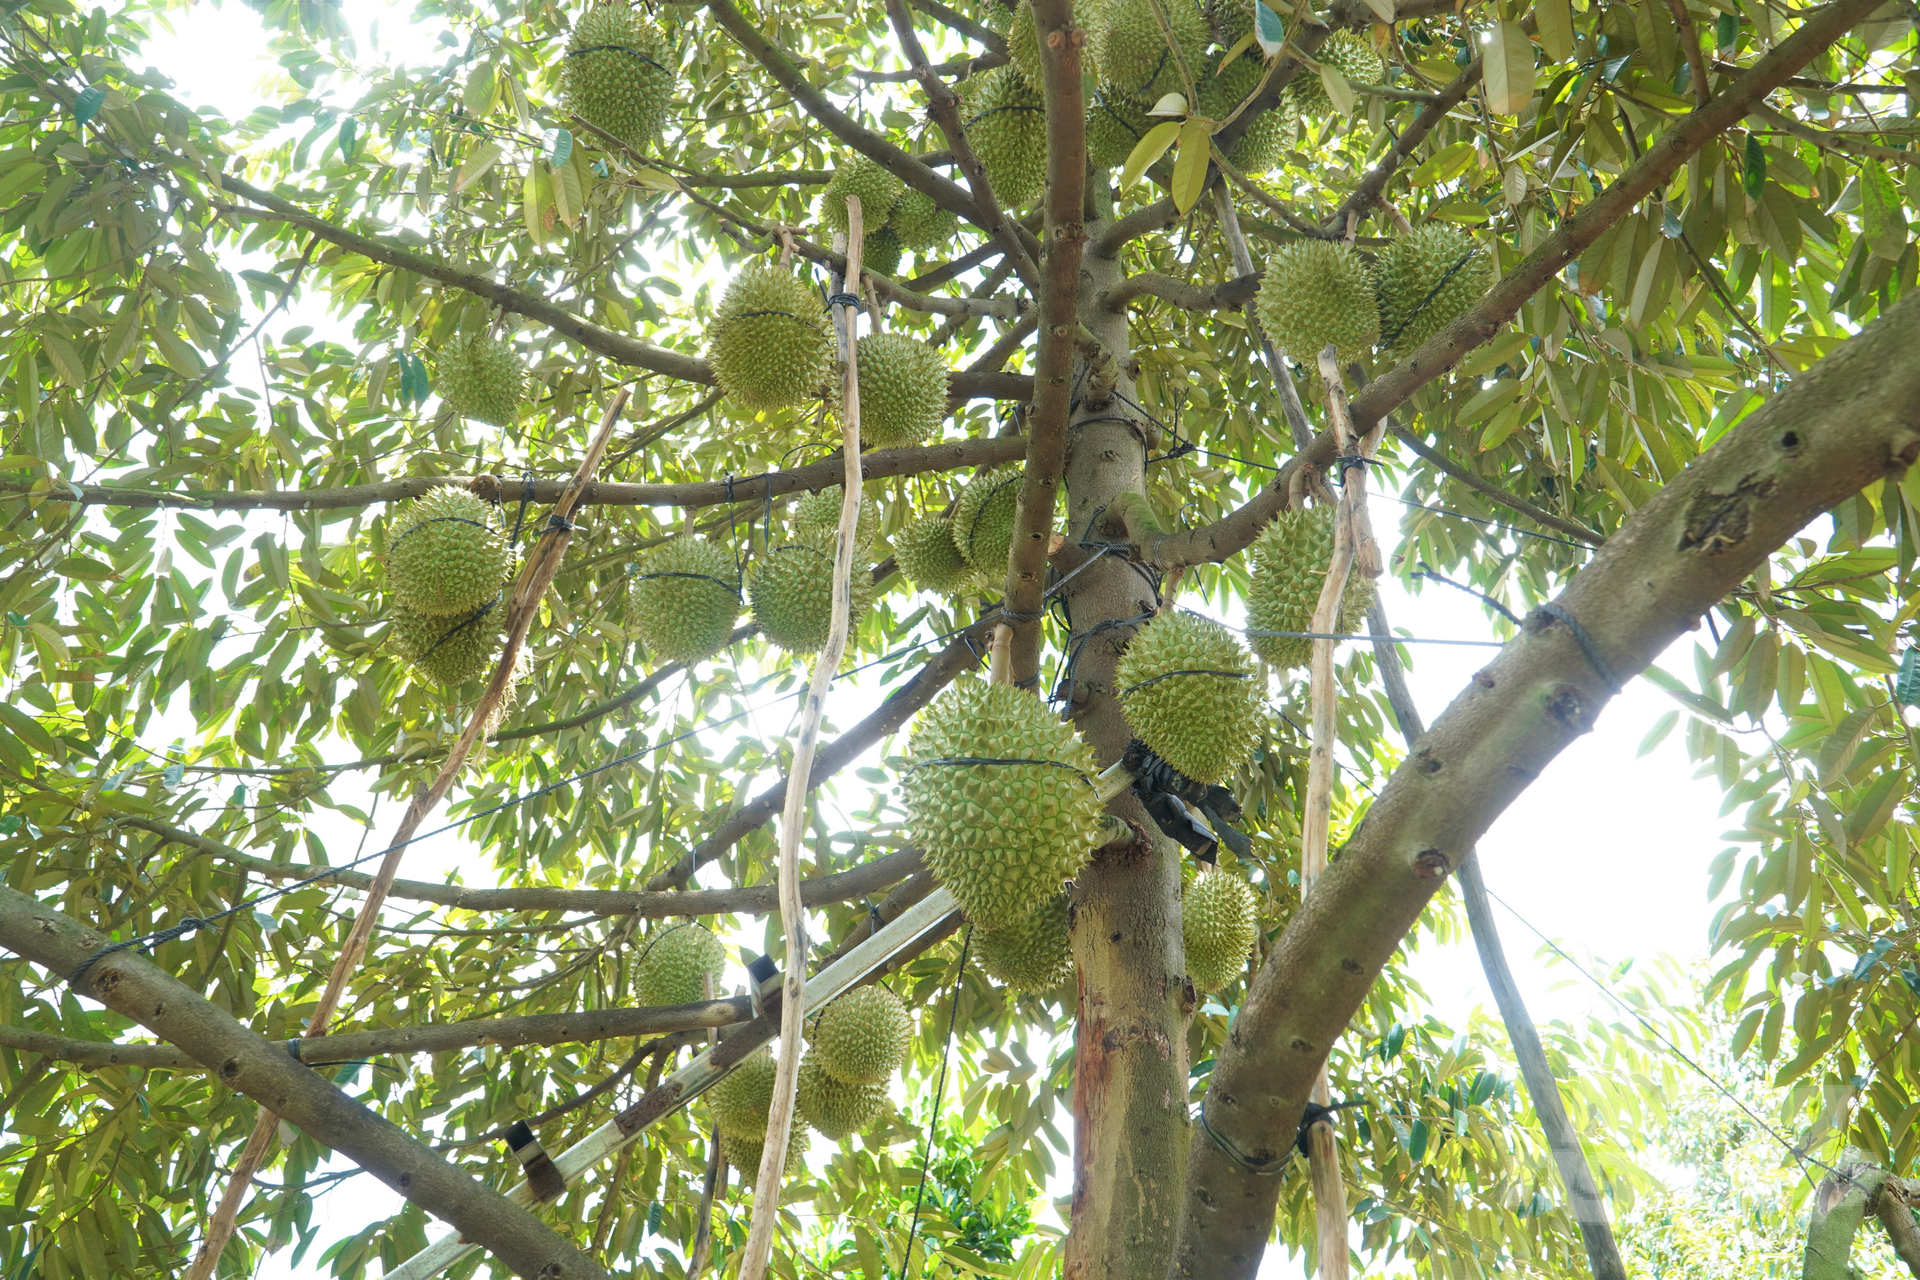 Mỗi cây sầu riêng nên để ít trái, khoảng 50 - 60 trái, đảm bảo chất lượng trái tốt, đạt yêu cầu theo các tiêu chuẩn xuất khẩu, nhất là không làm ảnh hưởng đến sức khỏe của cây trồng. Ảnh: Kiều Trang.